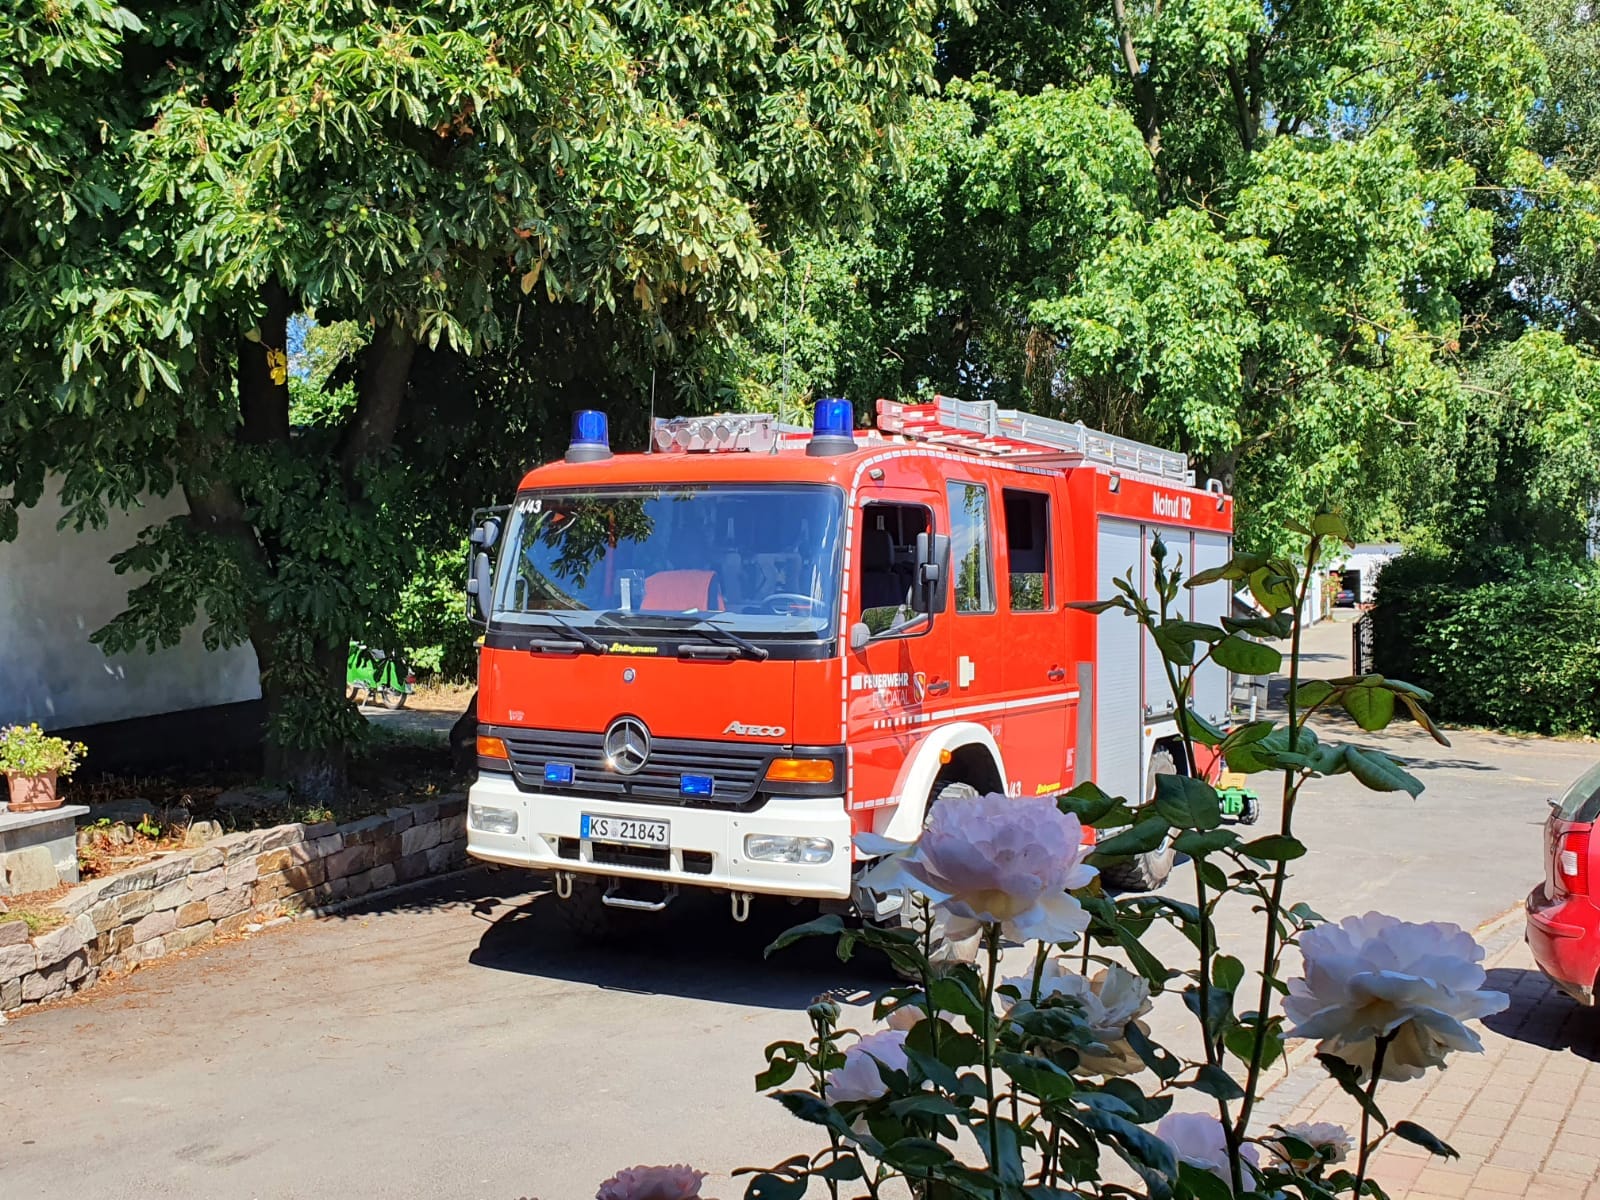 Feuerwehr zu Besuch auf dem Weidberghof